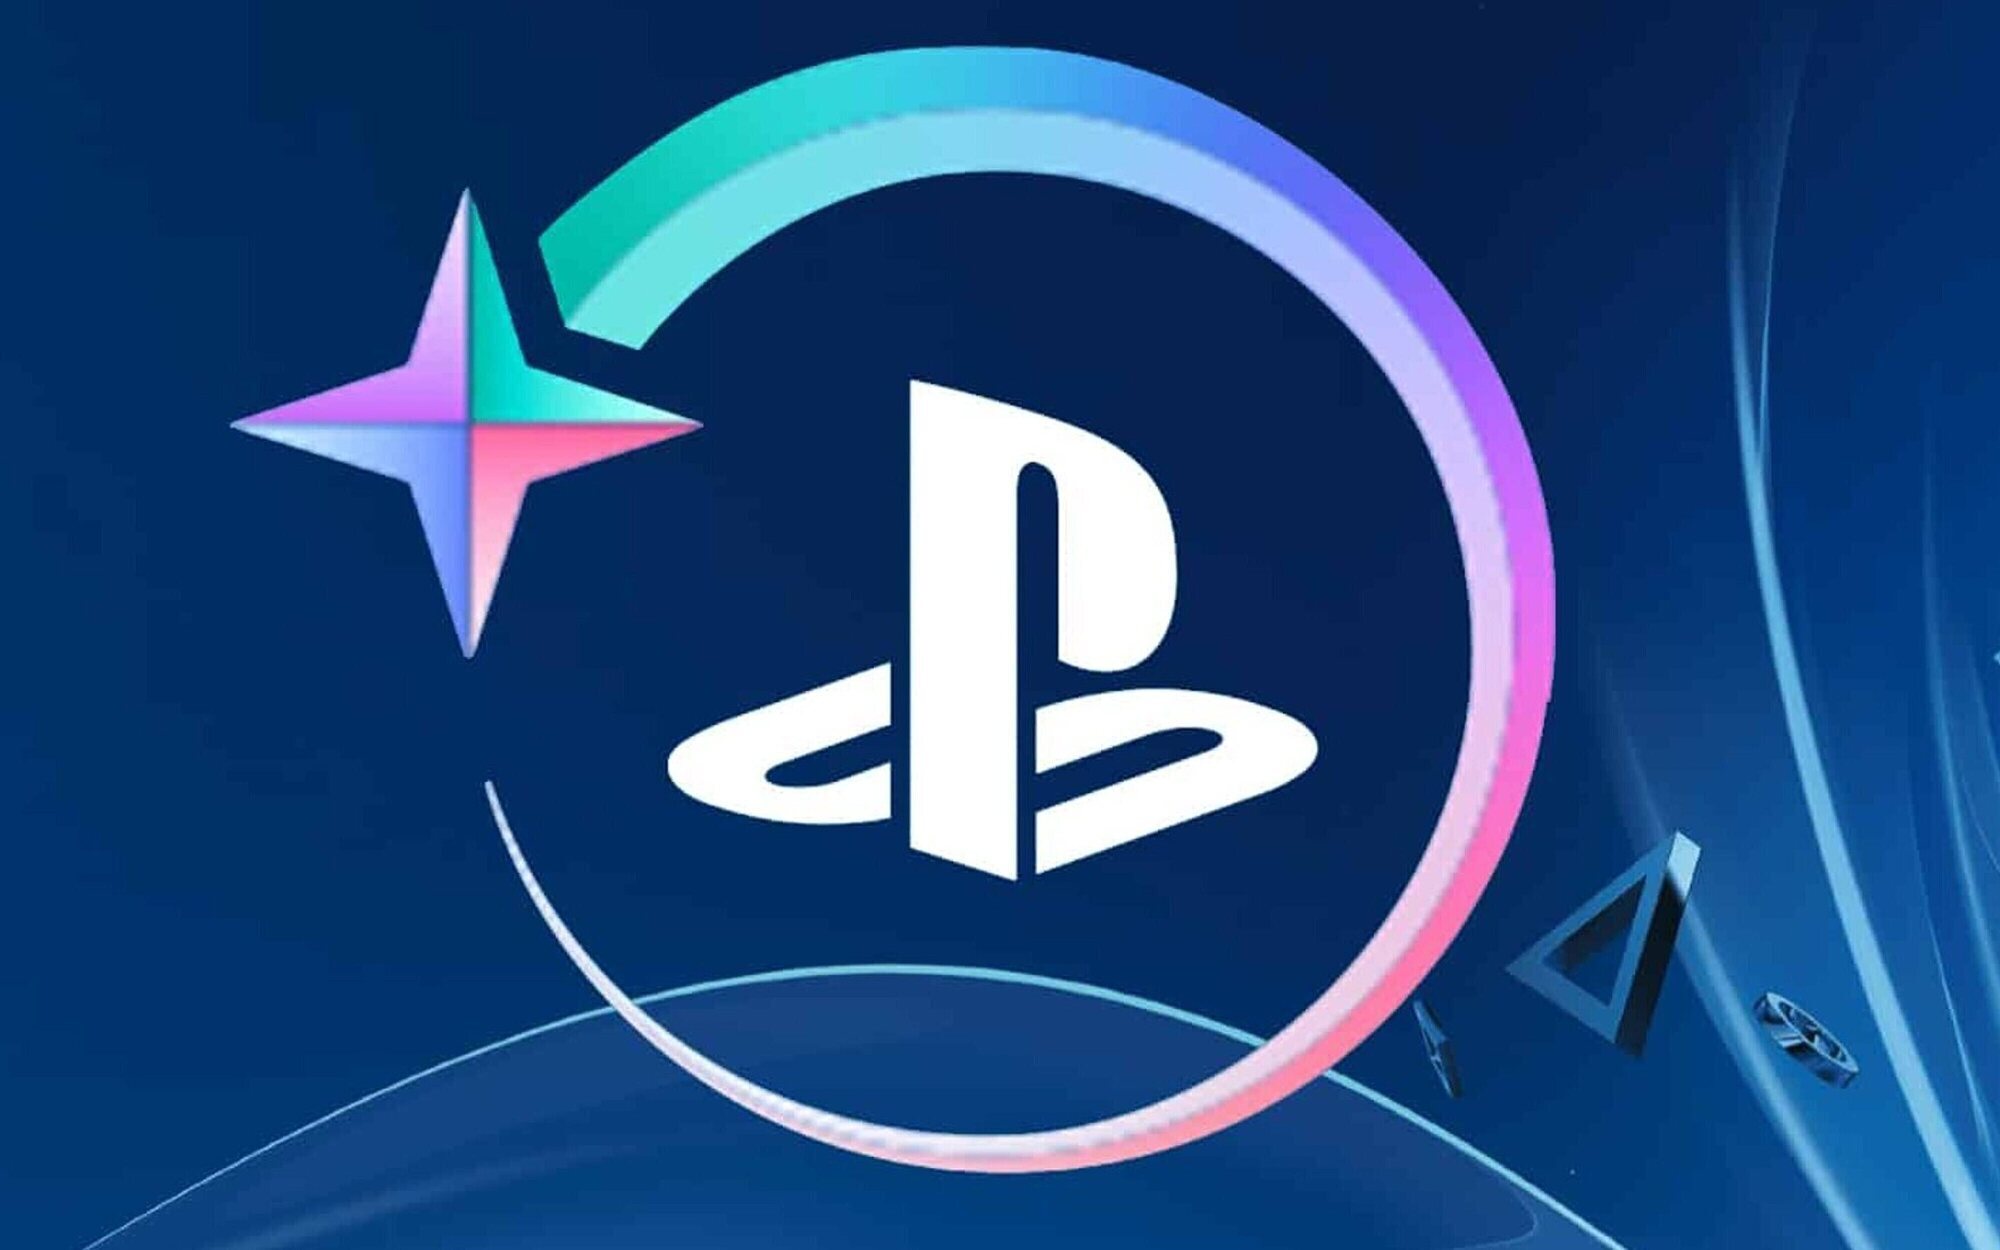 El programa PlayStation Stars ofrece una recompensa muy polémica que enfada a los japoneses